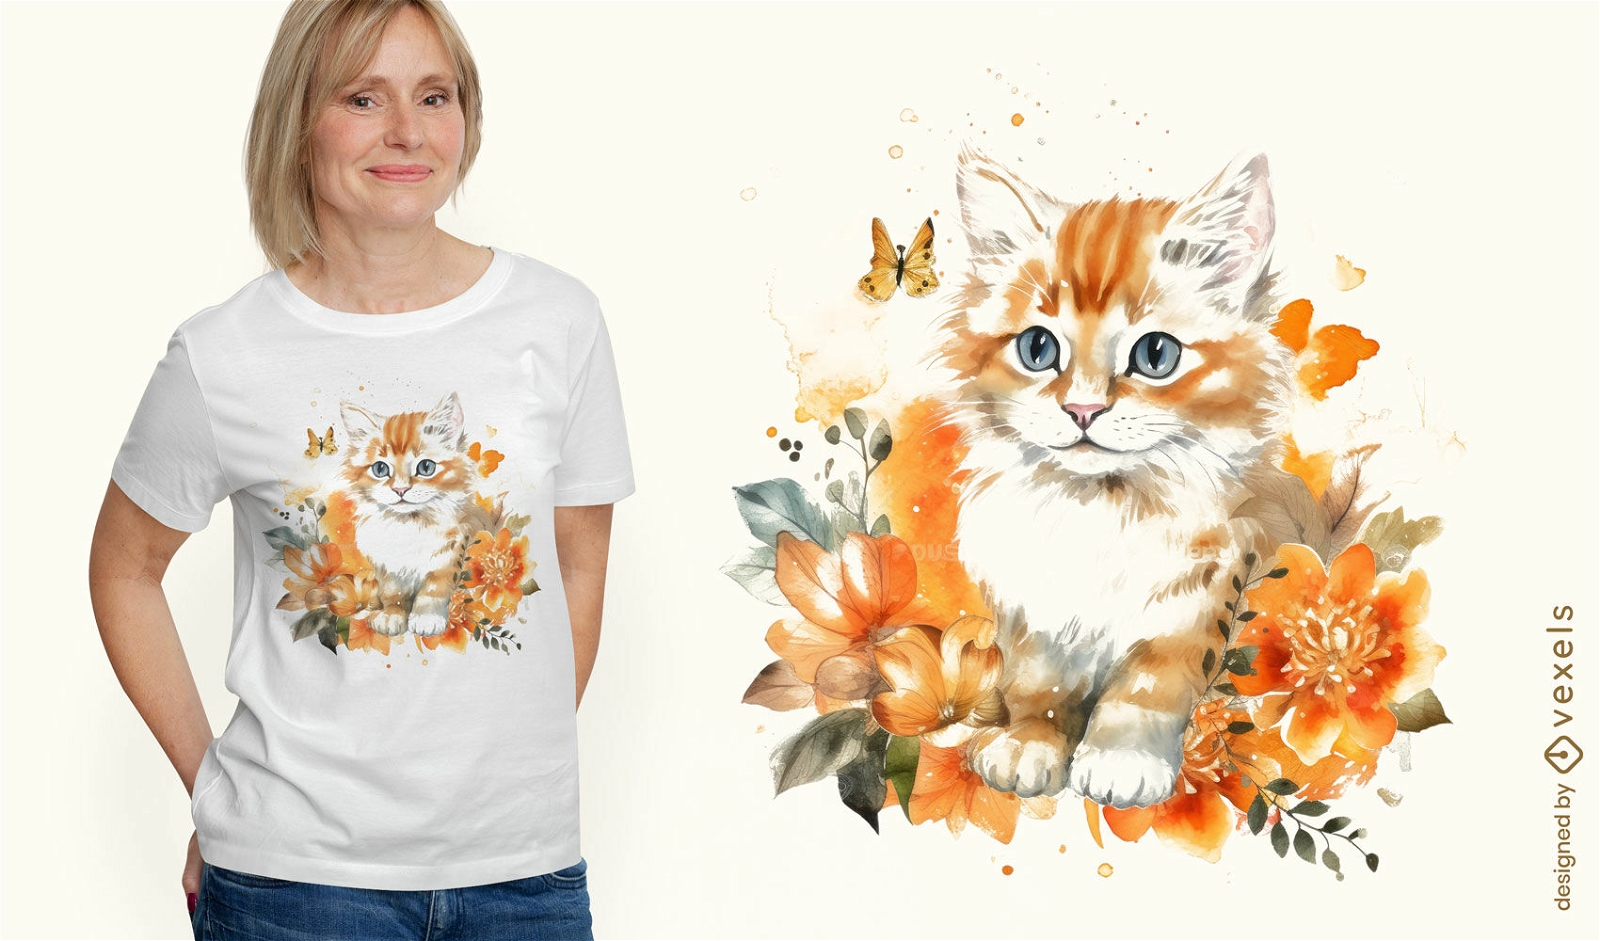 Diseño de camiseta de gatito en acuarela.